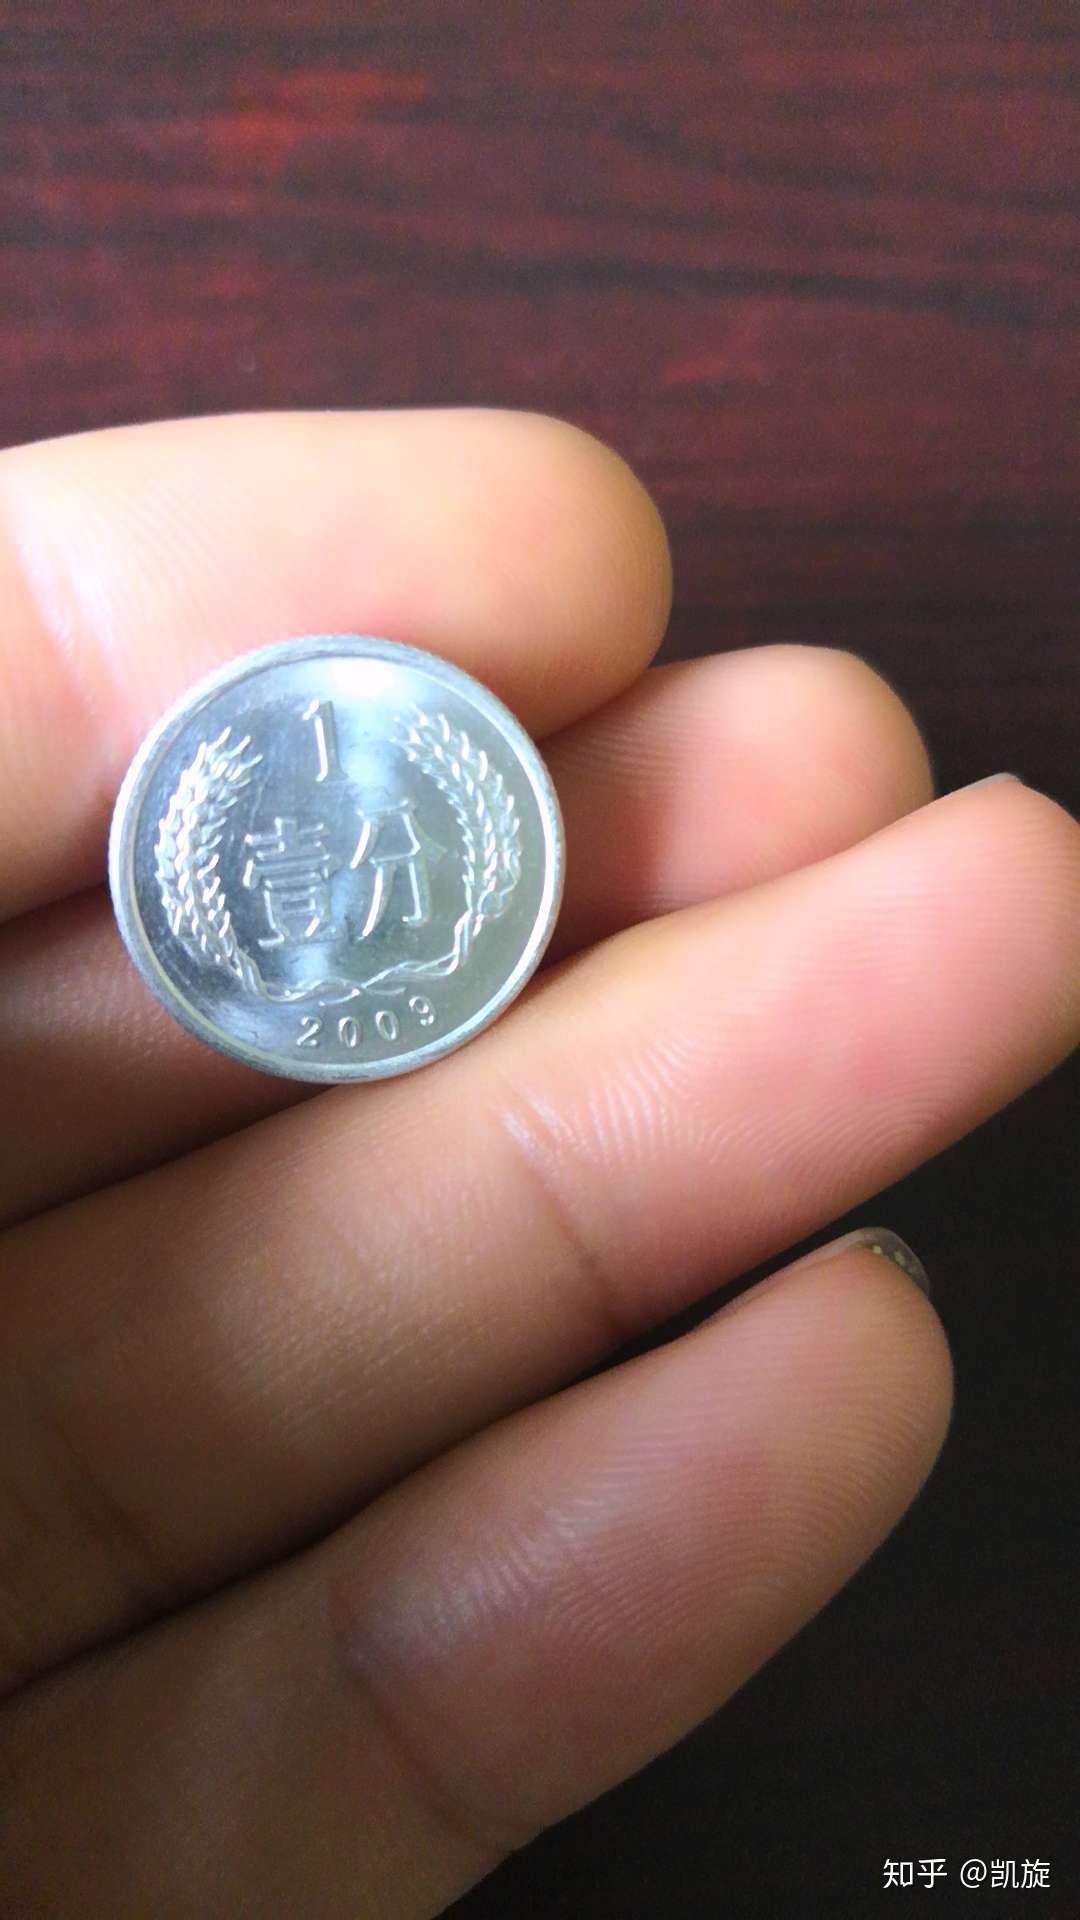 现在怎么会有2009年的一分钱硬币,做工不像是假币,有谁能解释一下吗